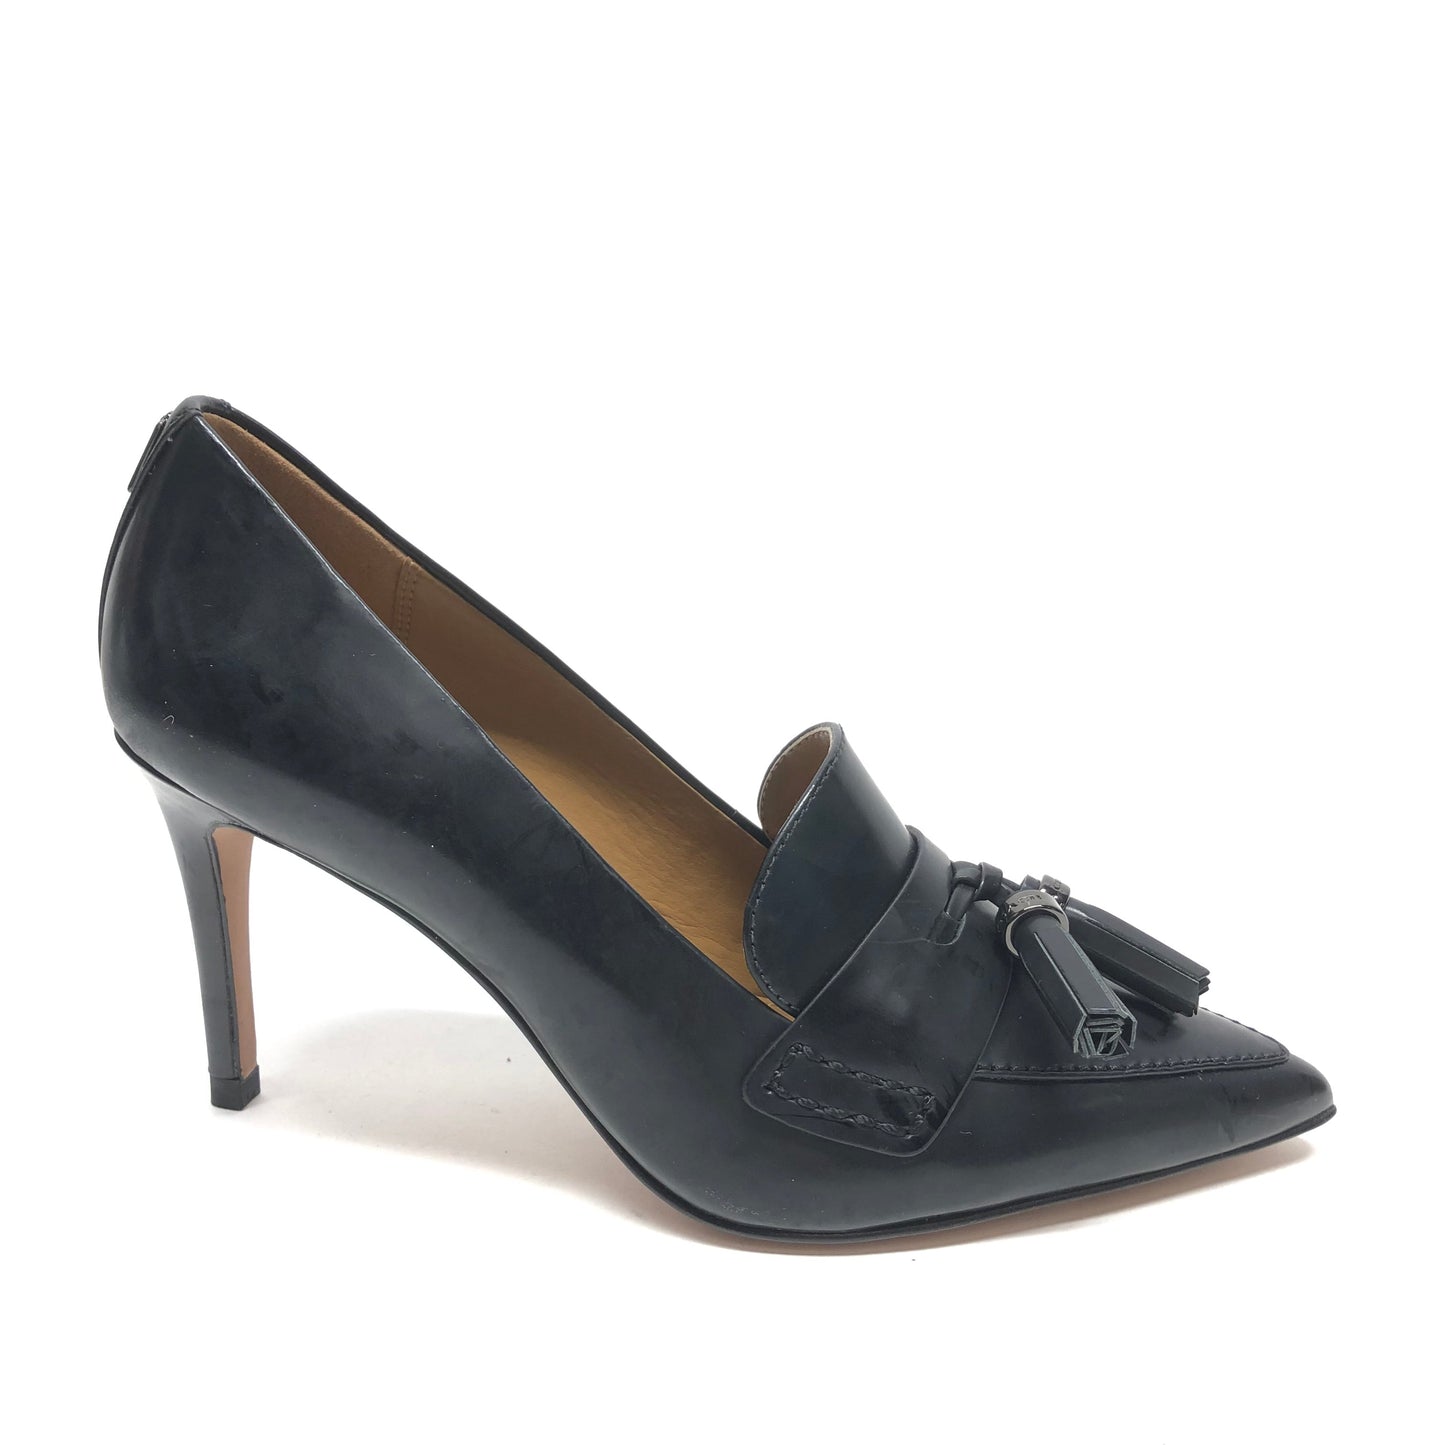 Black Shoes Heels Stiletto Coach, Size 6